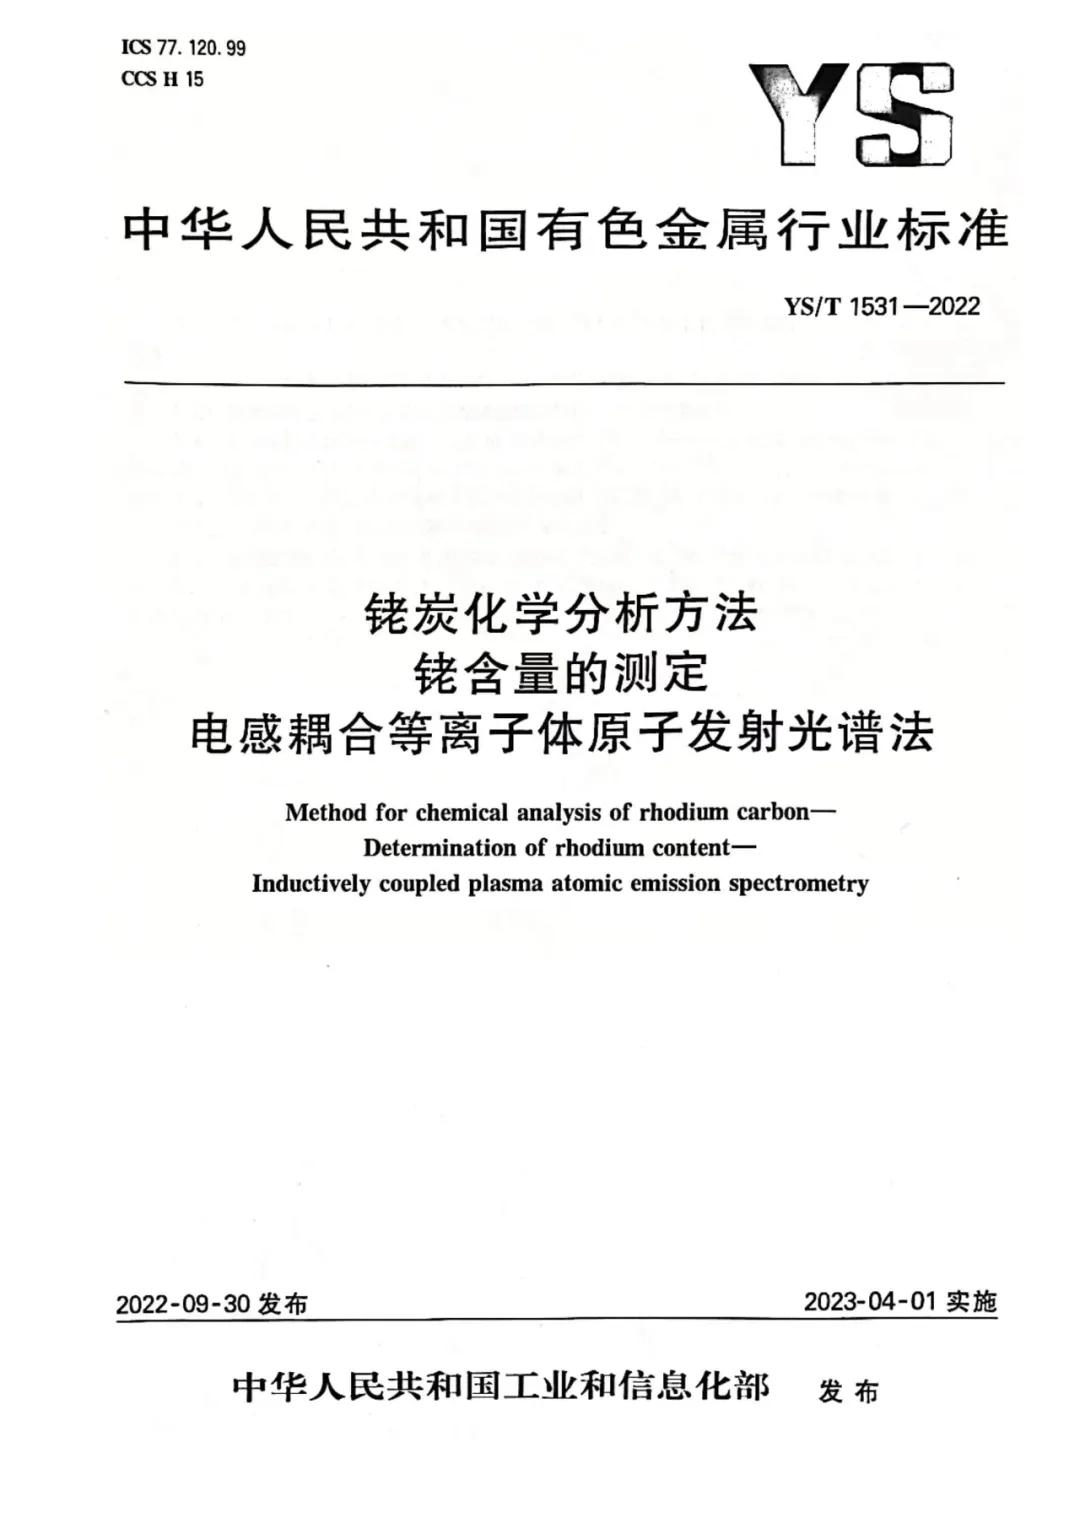 徐州新增一项“国家循环经济标准化试点”项目